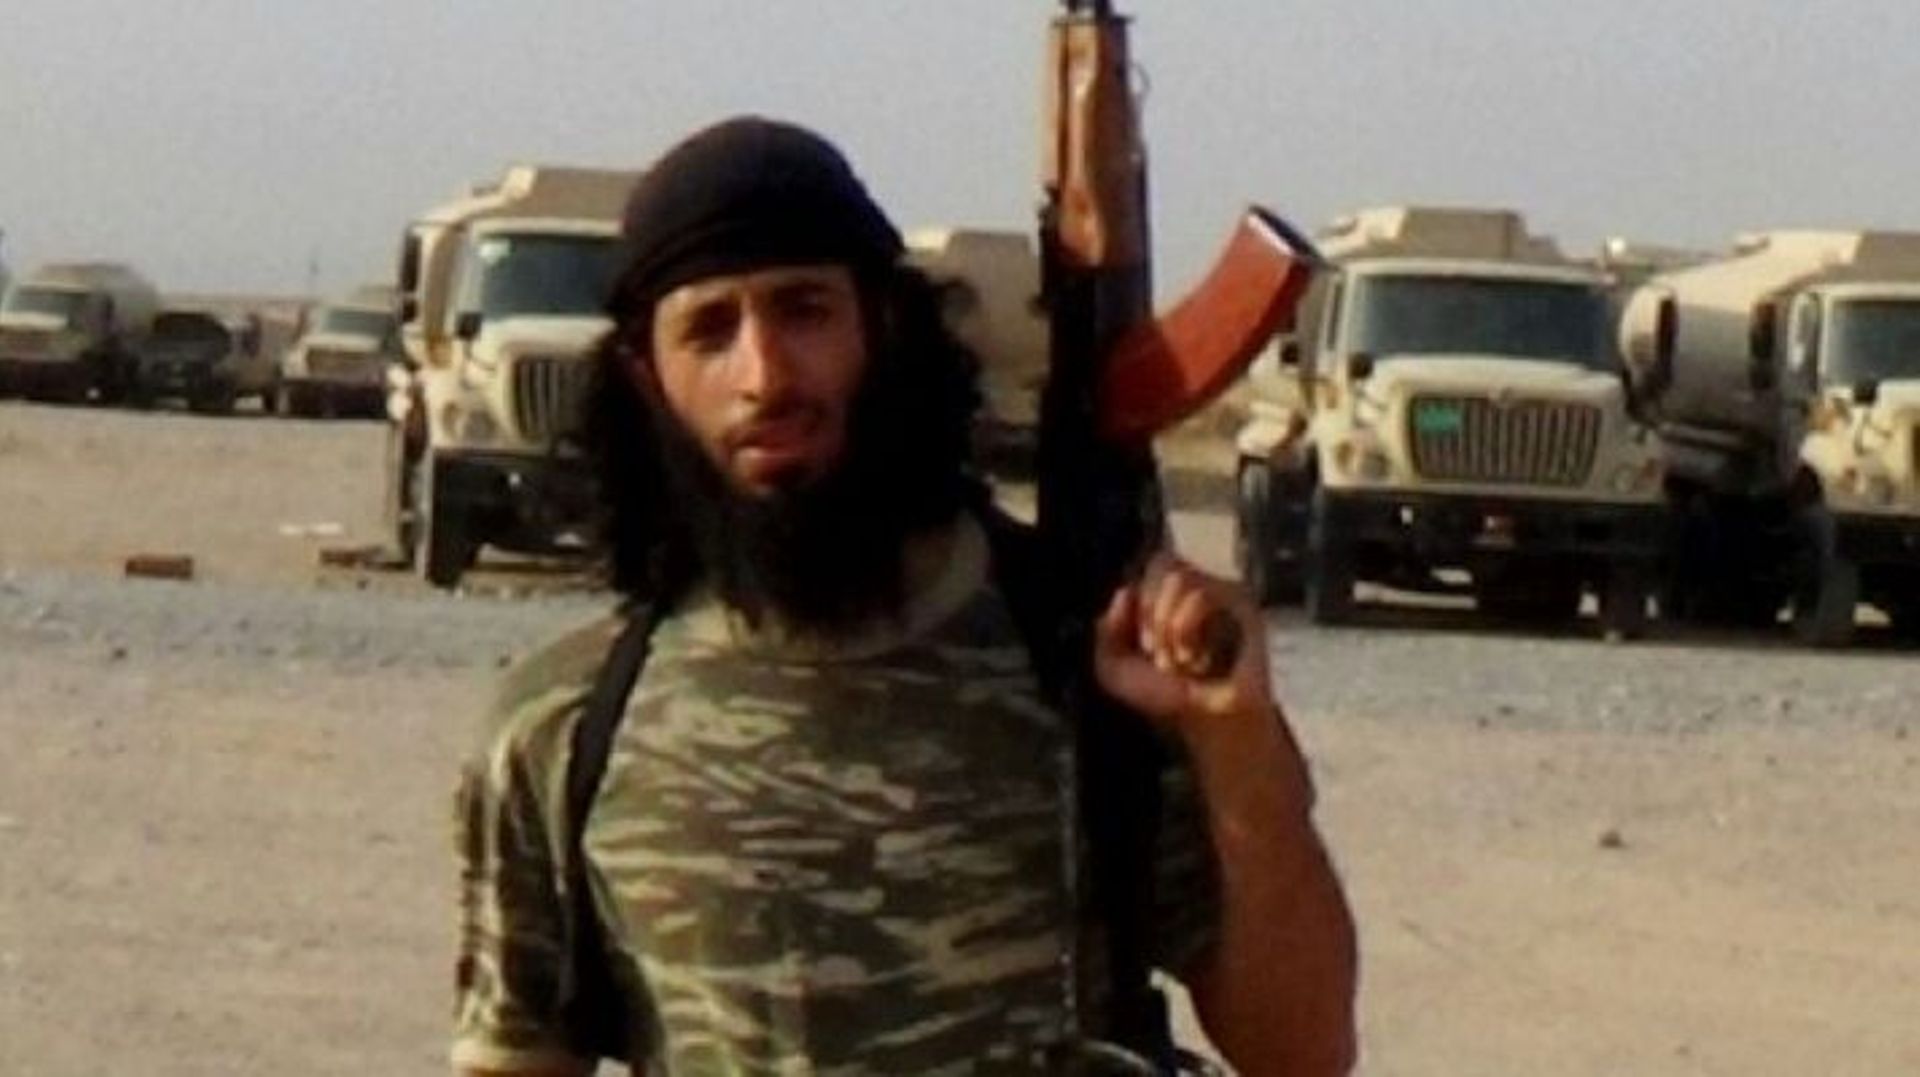 Photo non datée d'un homme présenté comme Mohammed Emwazi, alias "Jihadi John", et distribuée le 27 janvier 2016 sur un site d'informations affilié au groupe Etat islamique